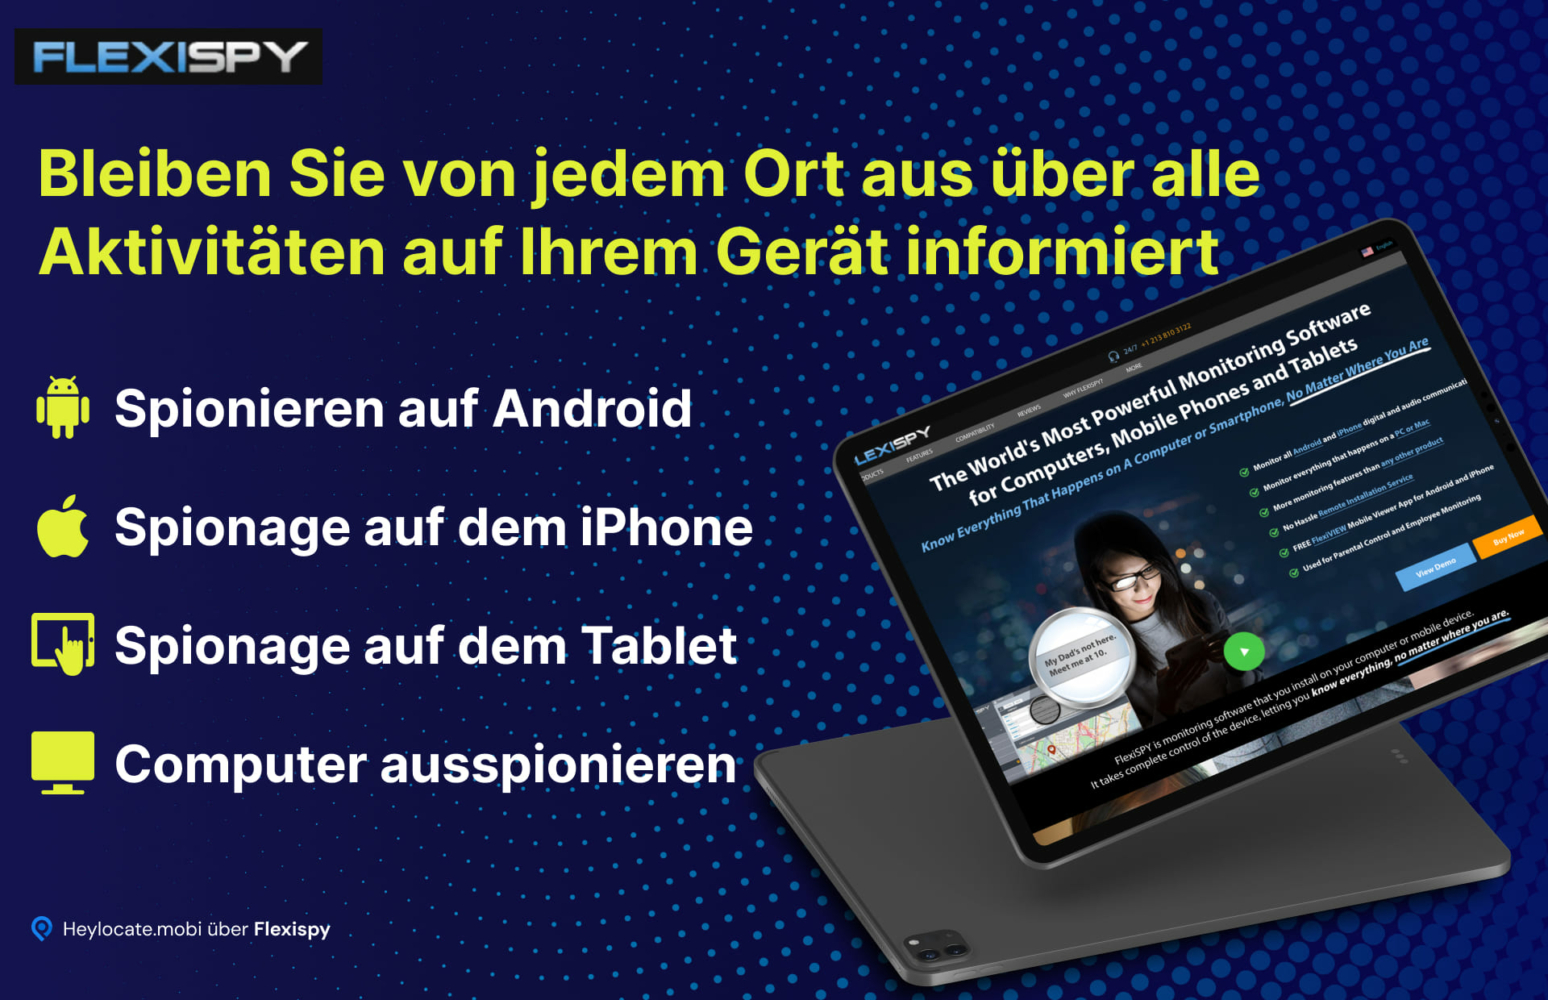 Werbebild eines Gadgets, das die Website von FlexiSPY anzeigt, einer Software zur Überwachung von Aktivitäten auf verschiedenen Geräten wie Android- und iOS-Telefonen, Tablets und Computern, mit einer Auflistung der wichtigsten Funktionen daneben.